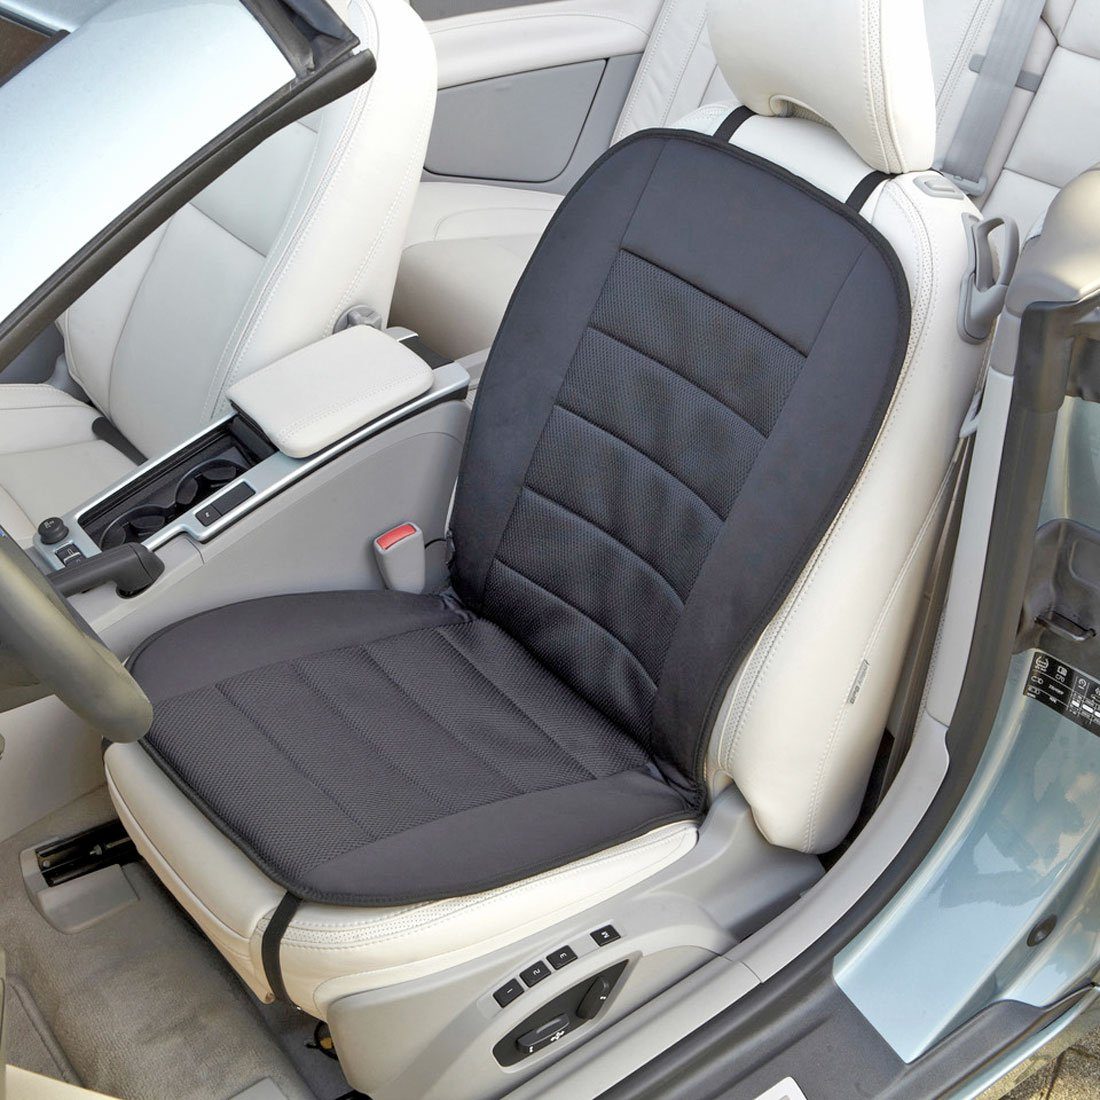 Cartrend Sitzheizkissen Auto Sitzheizung 2x Stufen CARBONHEIZMATTE getrennt  Sitz & Rücken, Carbonheizmatte für schnelle und gleichmäßige Wärmeverteilung